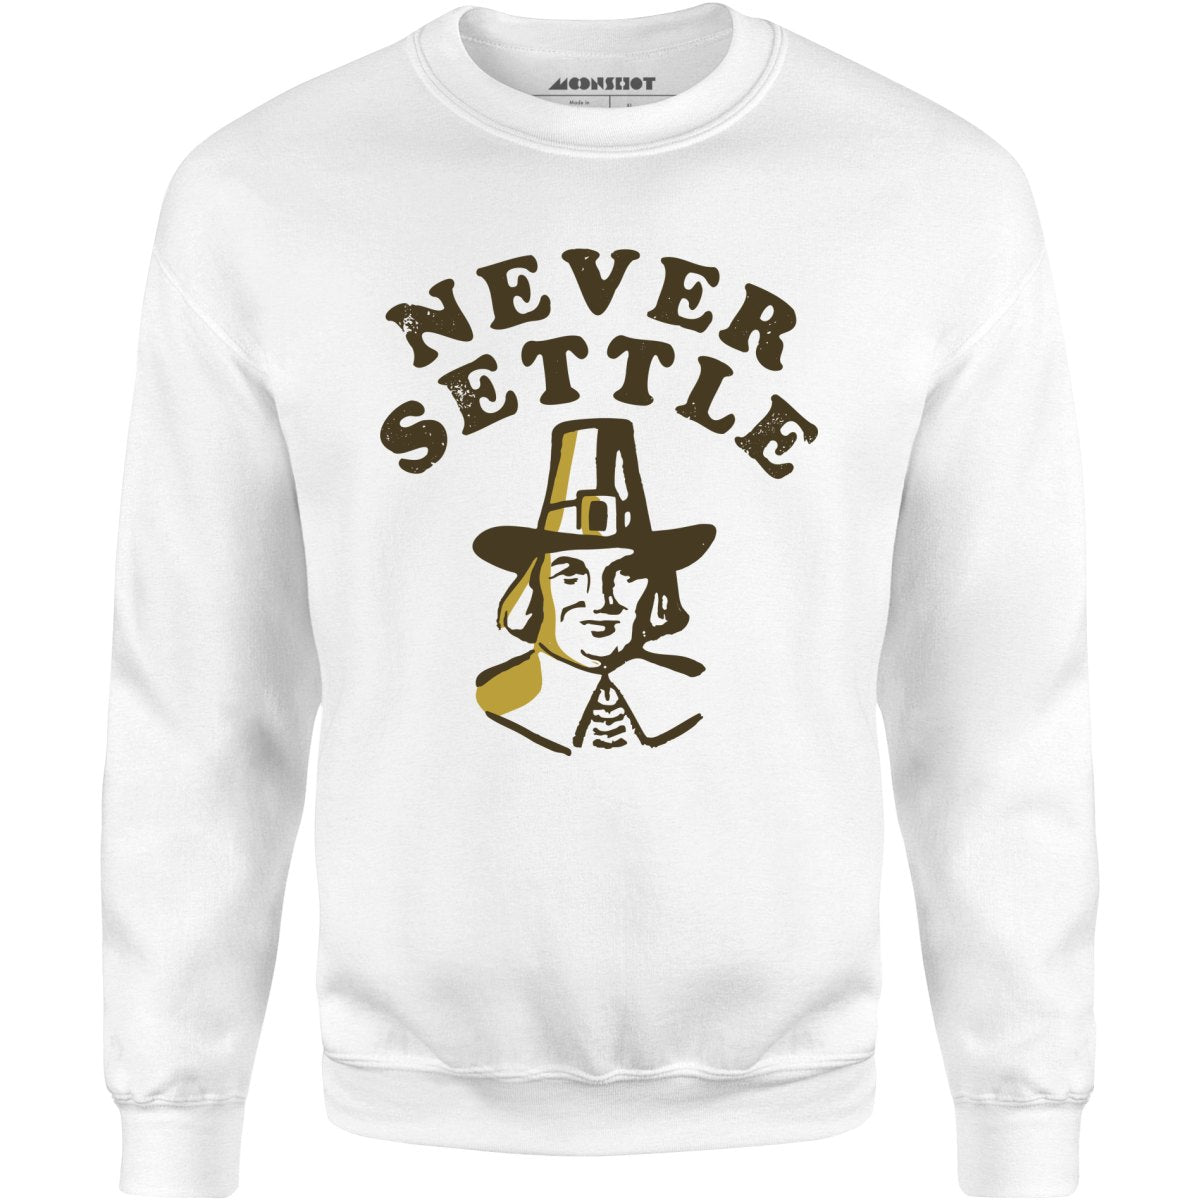 Never Settle - Unisex Sweatshirt